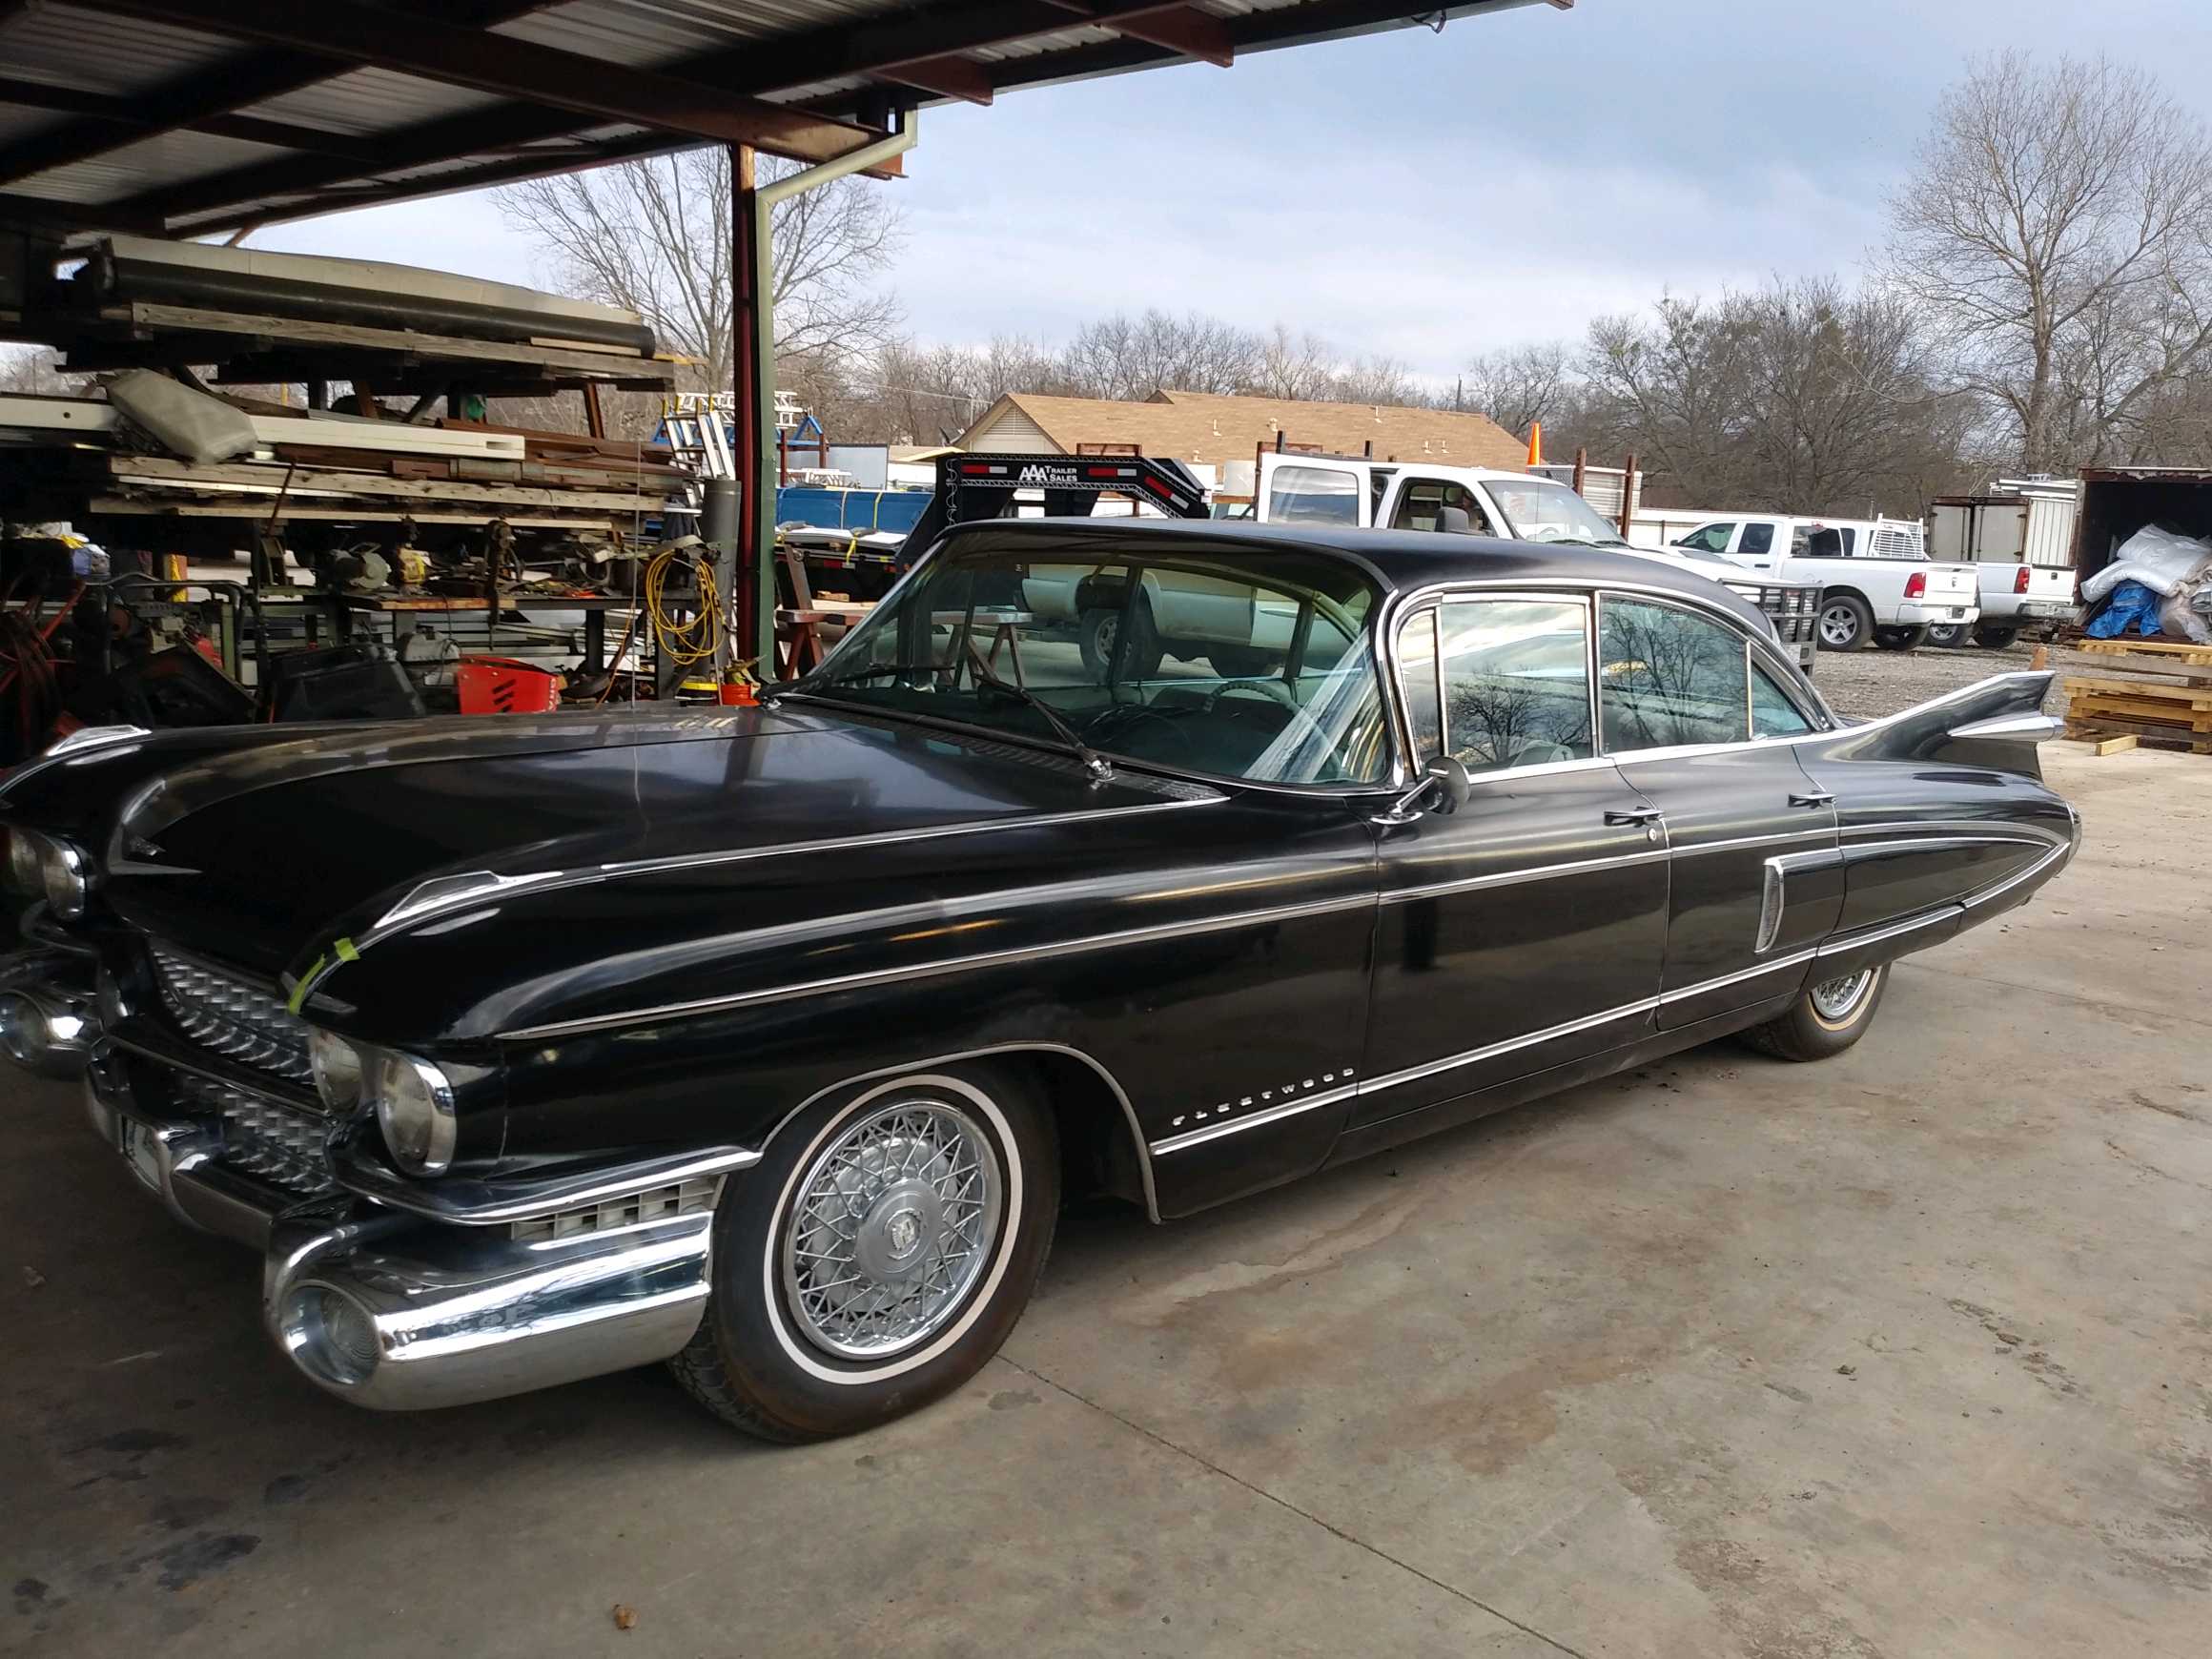 SÅLD

Cadillac Fleetwood 1959 i fint skick påväg hem!

Ring för mera info!